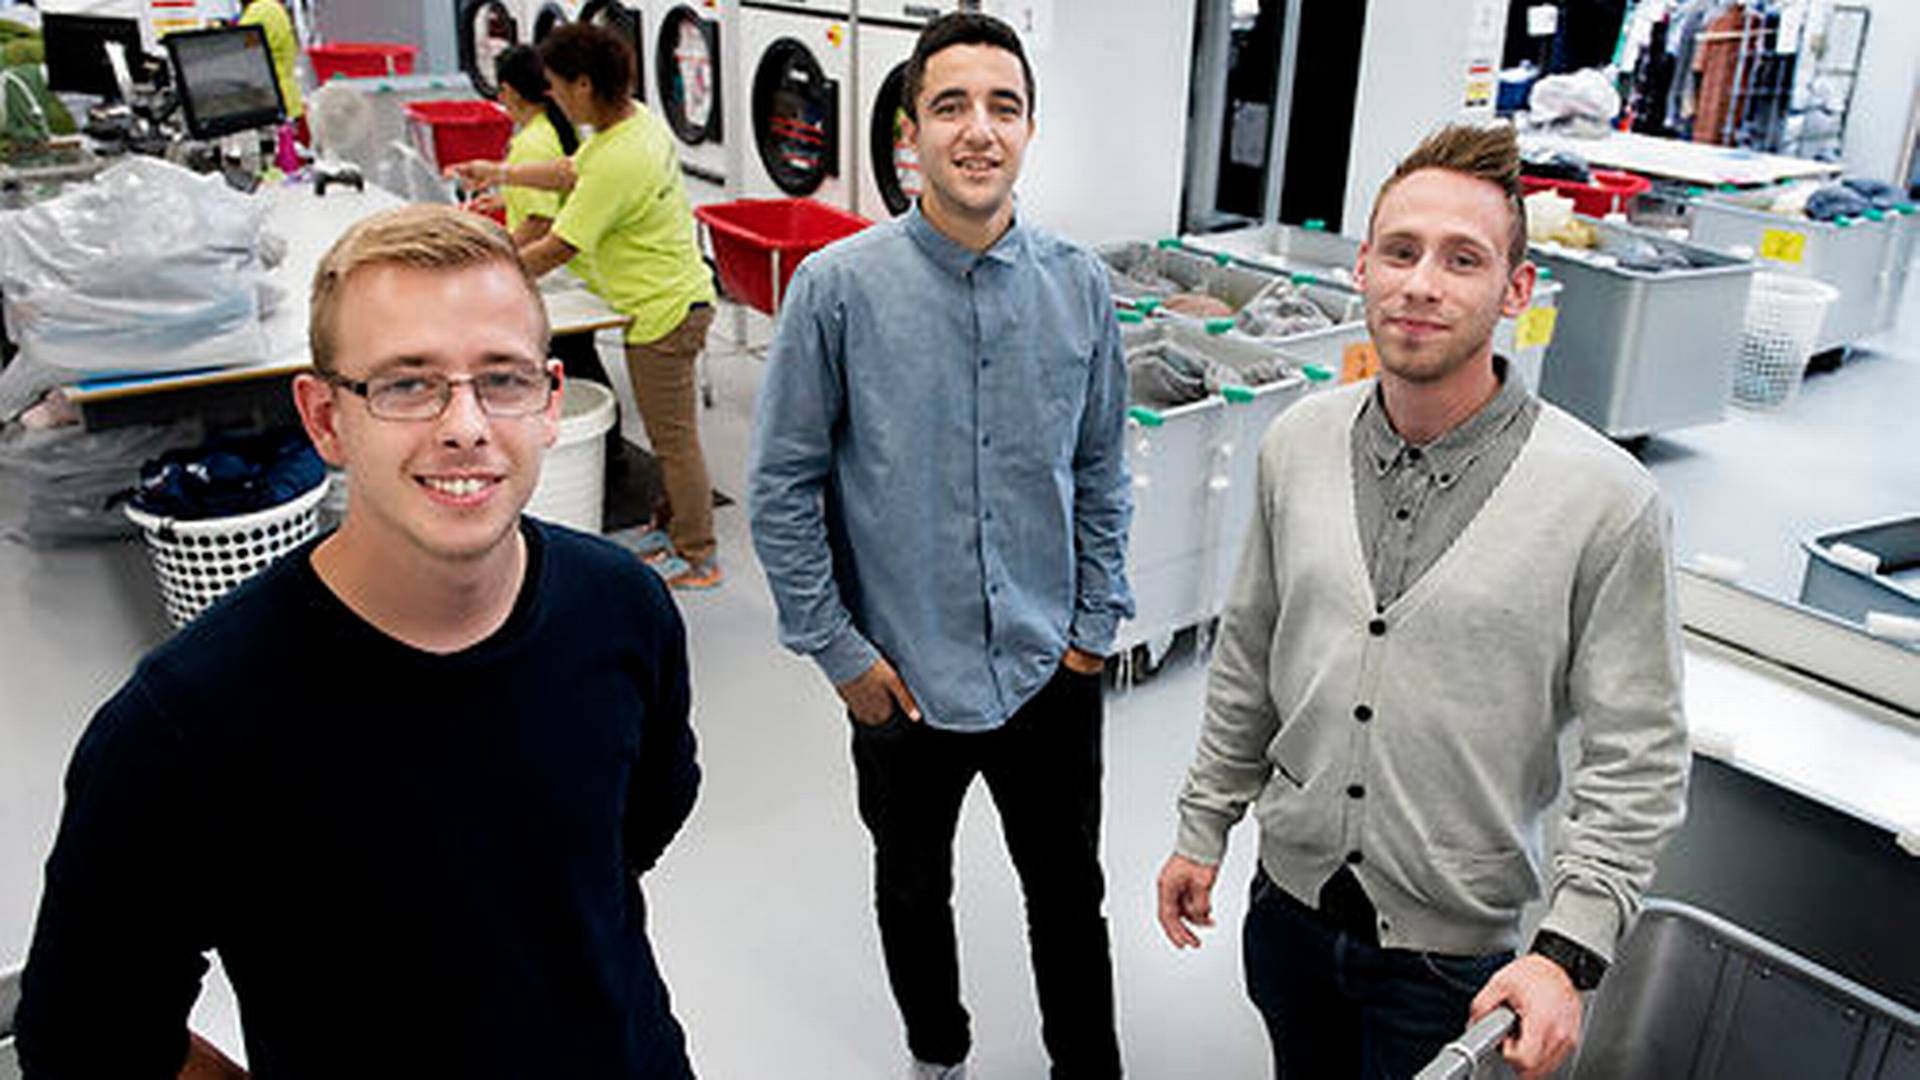 Her ses de tre stiftere af konkursramte Washa. To af dem, Max Stripp til venstre og Karim Ben M'Barek i midten, er medejer af Washa 3.0, som har købt konkursboet. | Photo: Ritzau Scanpix